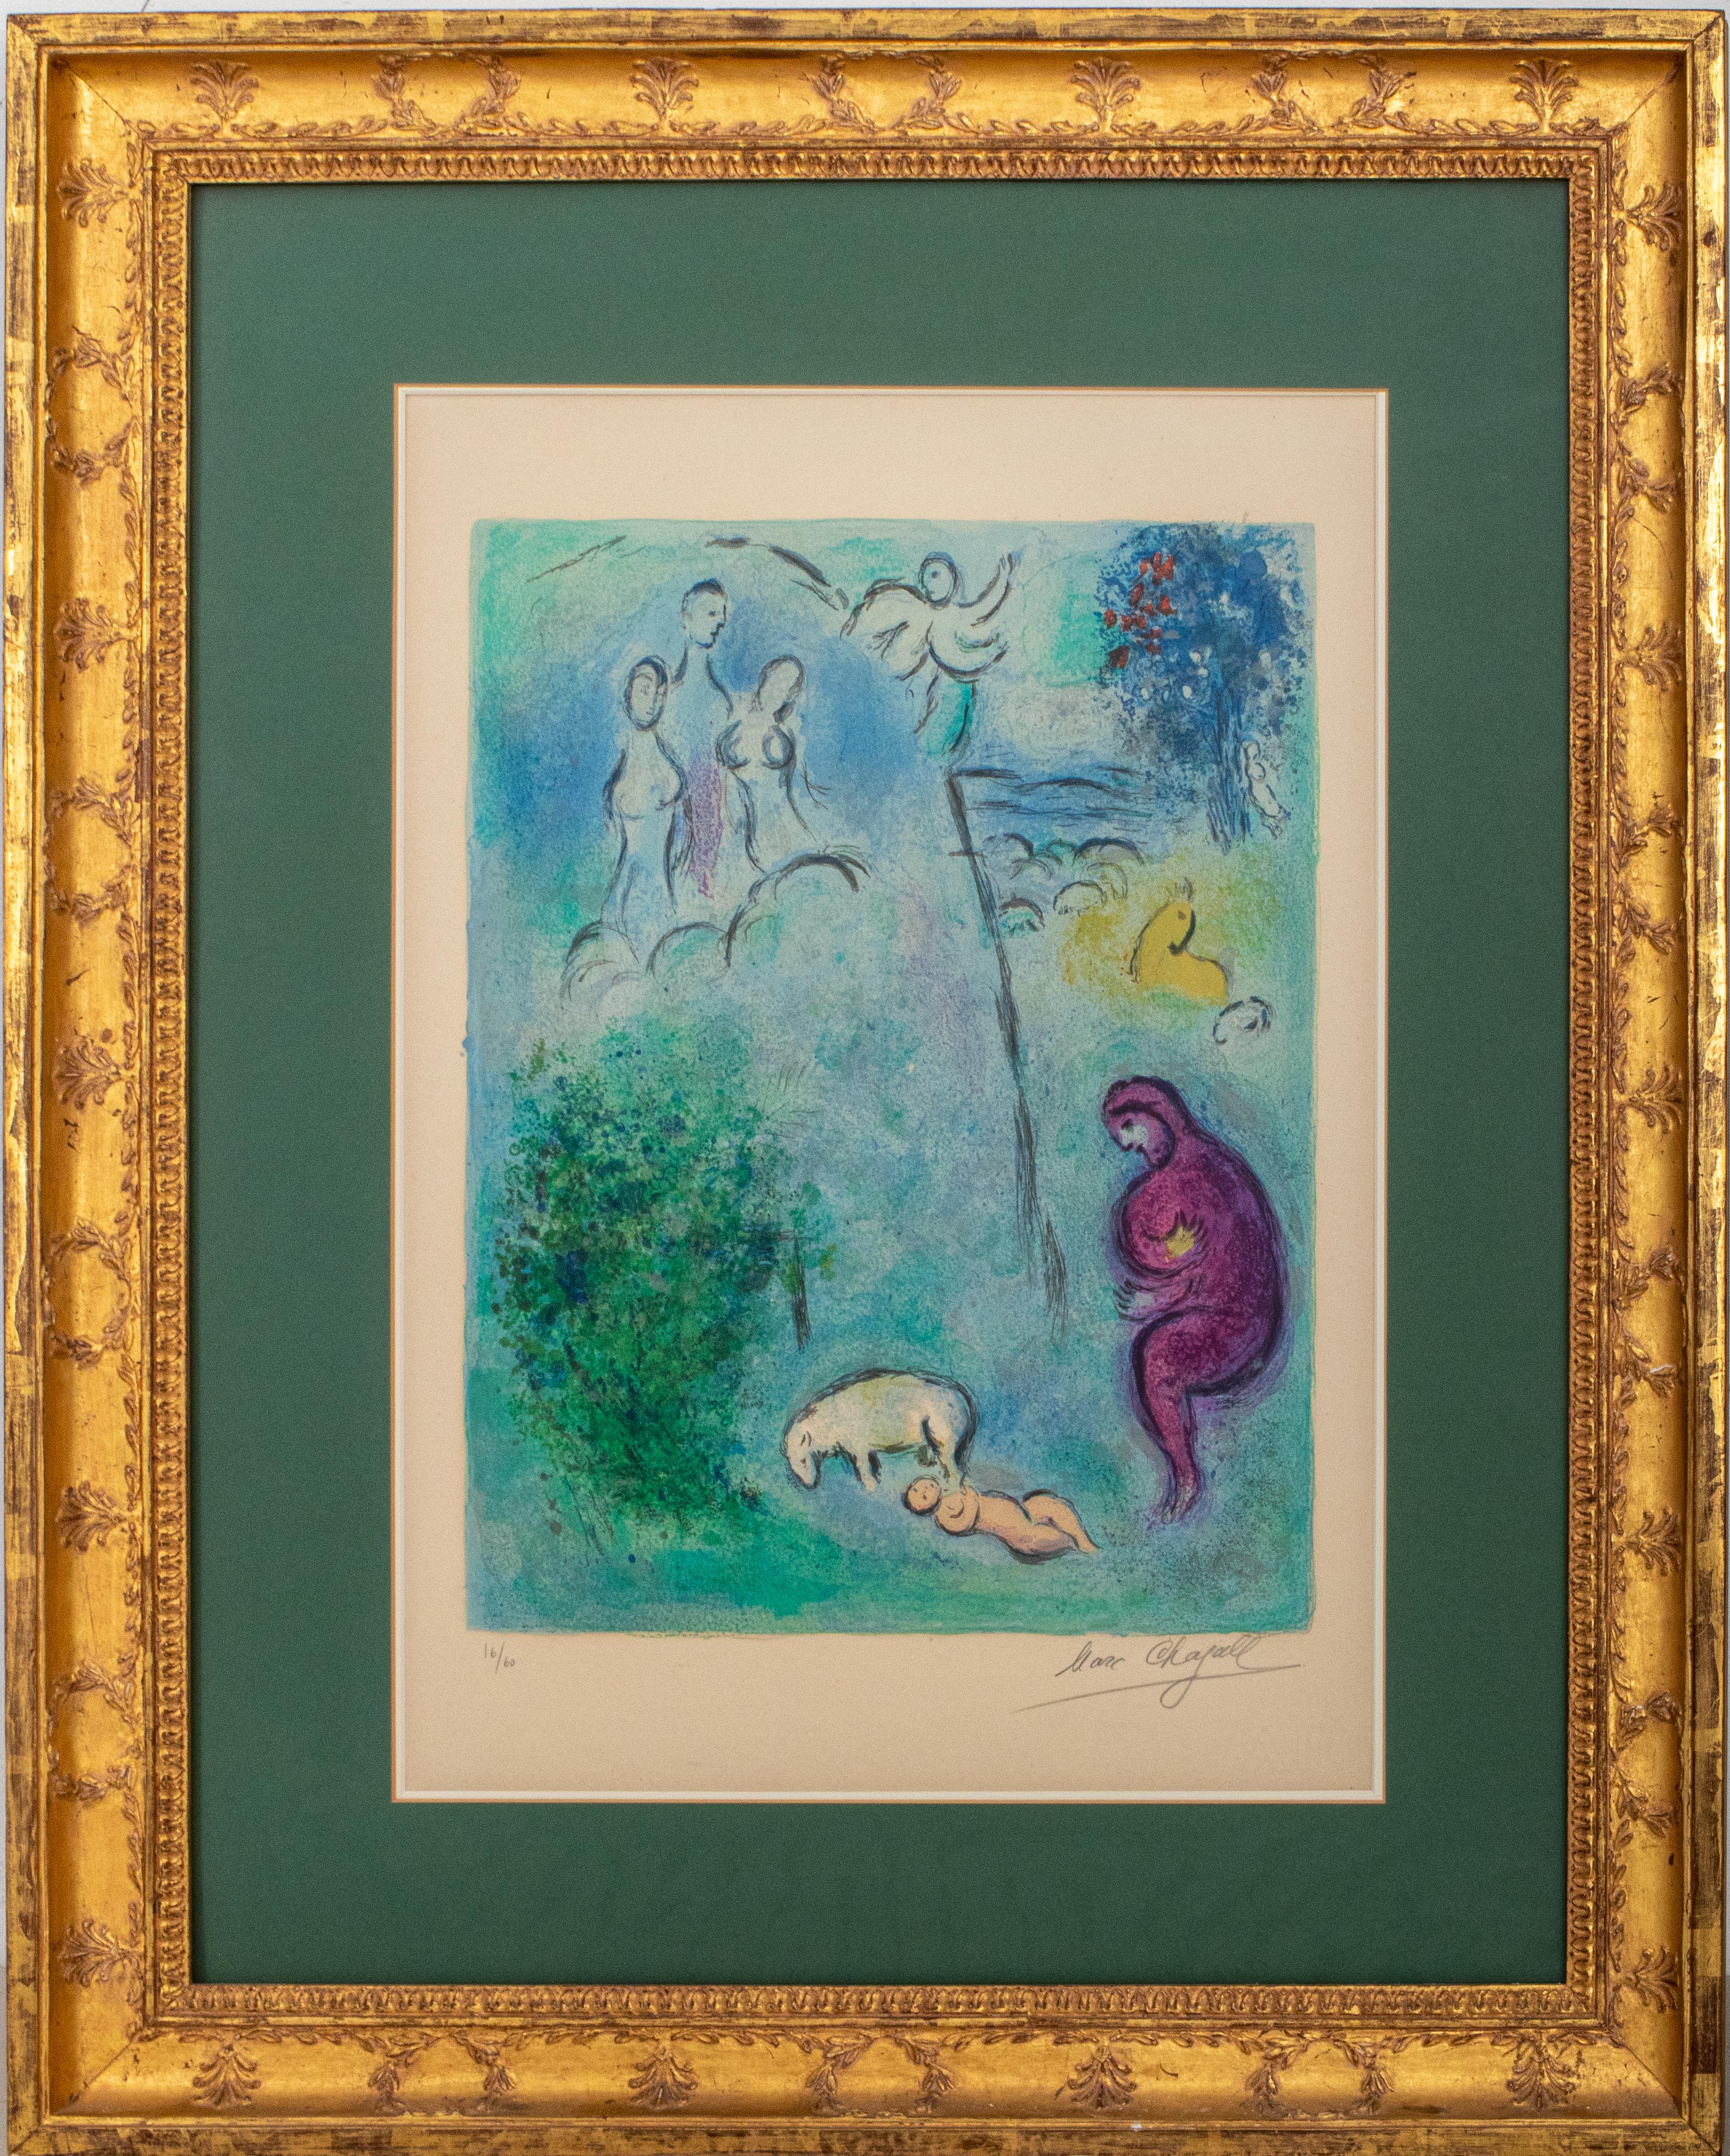 Marc Chagall (1887-1985)
"Daphnis entdeckt Chloe"                                                                                                                              
aus Daphnis und Chloe, "Decouverte de Chloe par Daphnis" (1960),